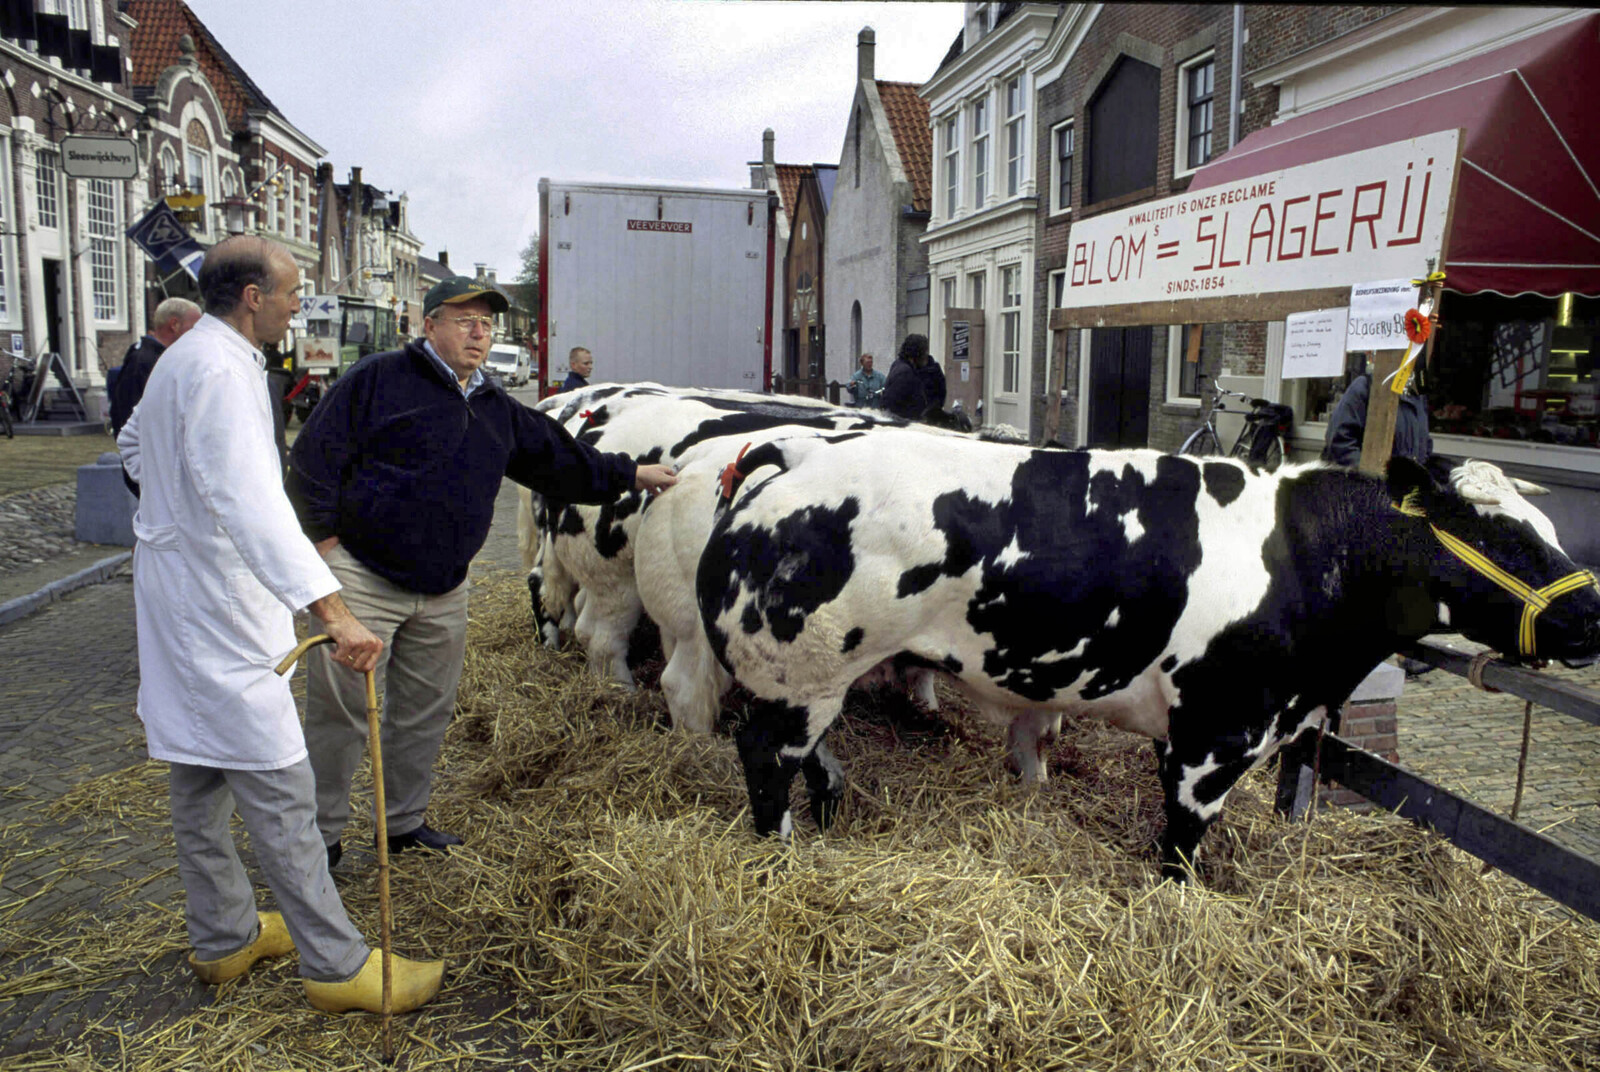 The Netherlands, Friesland, Workum 2000